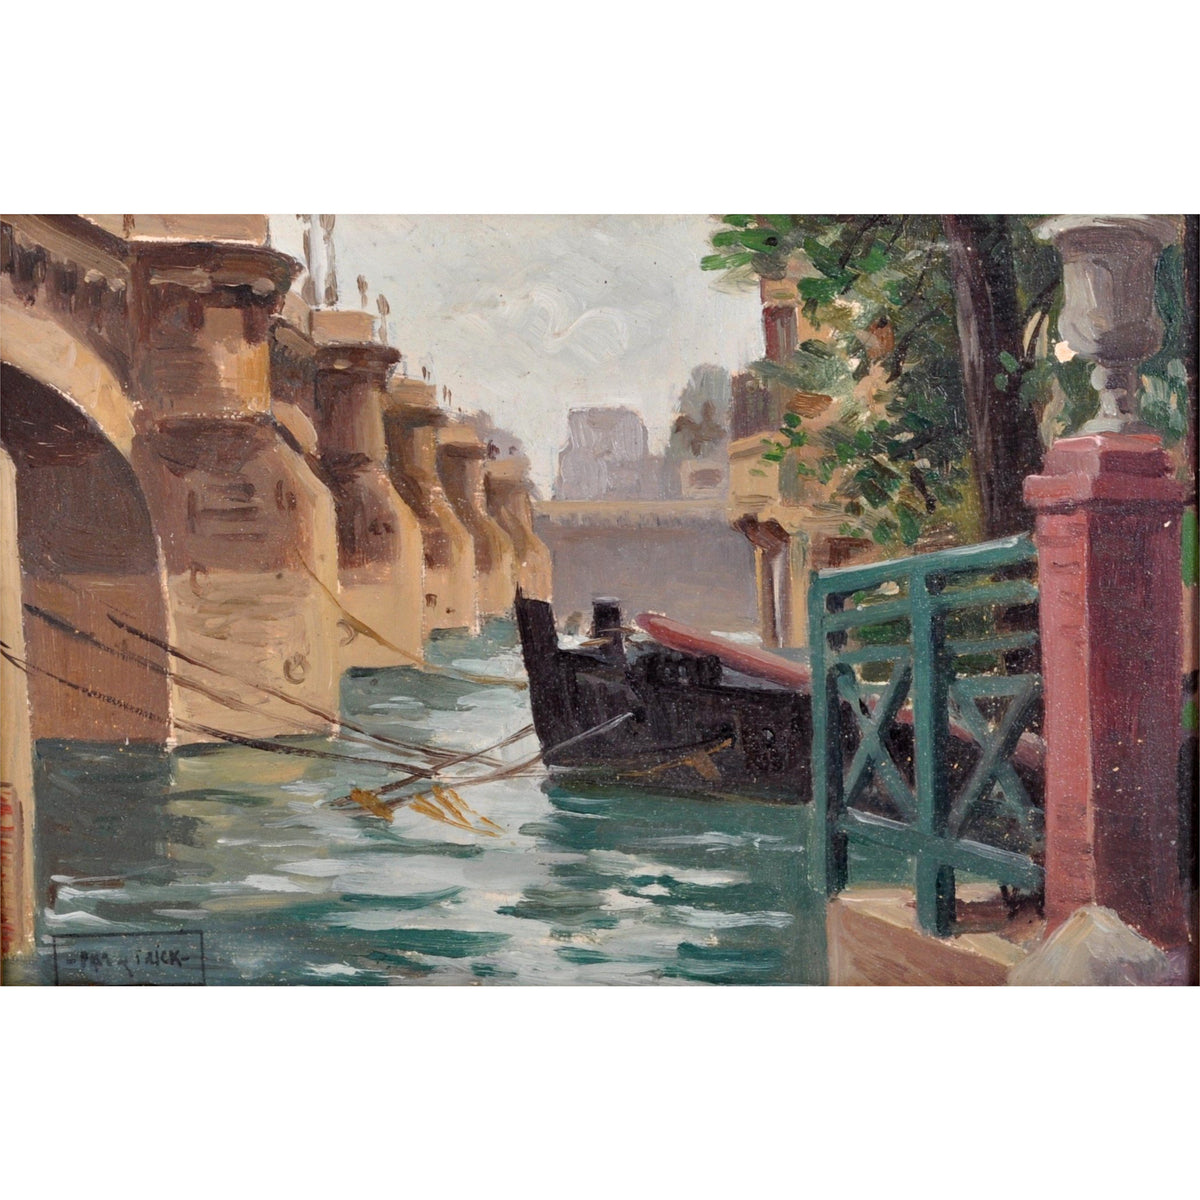 Antique French Impressionist Oil Painting Pont Neuf Bridge Paris by Paul de Frick 1900